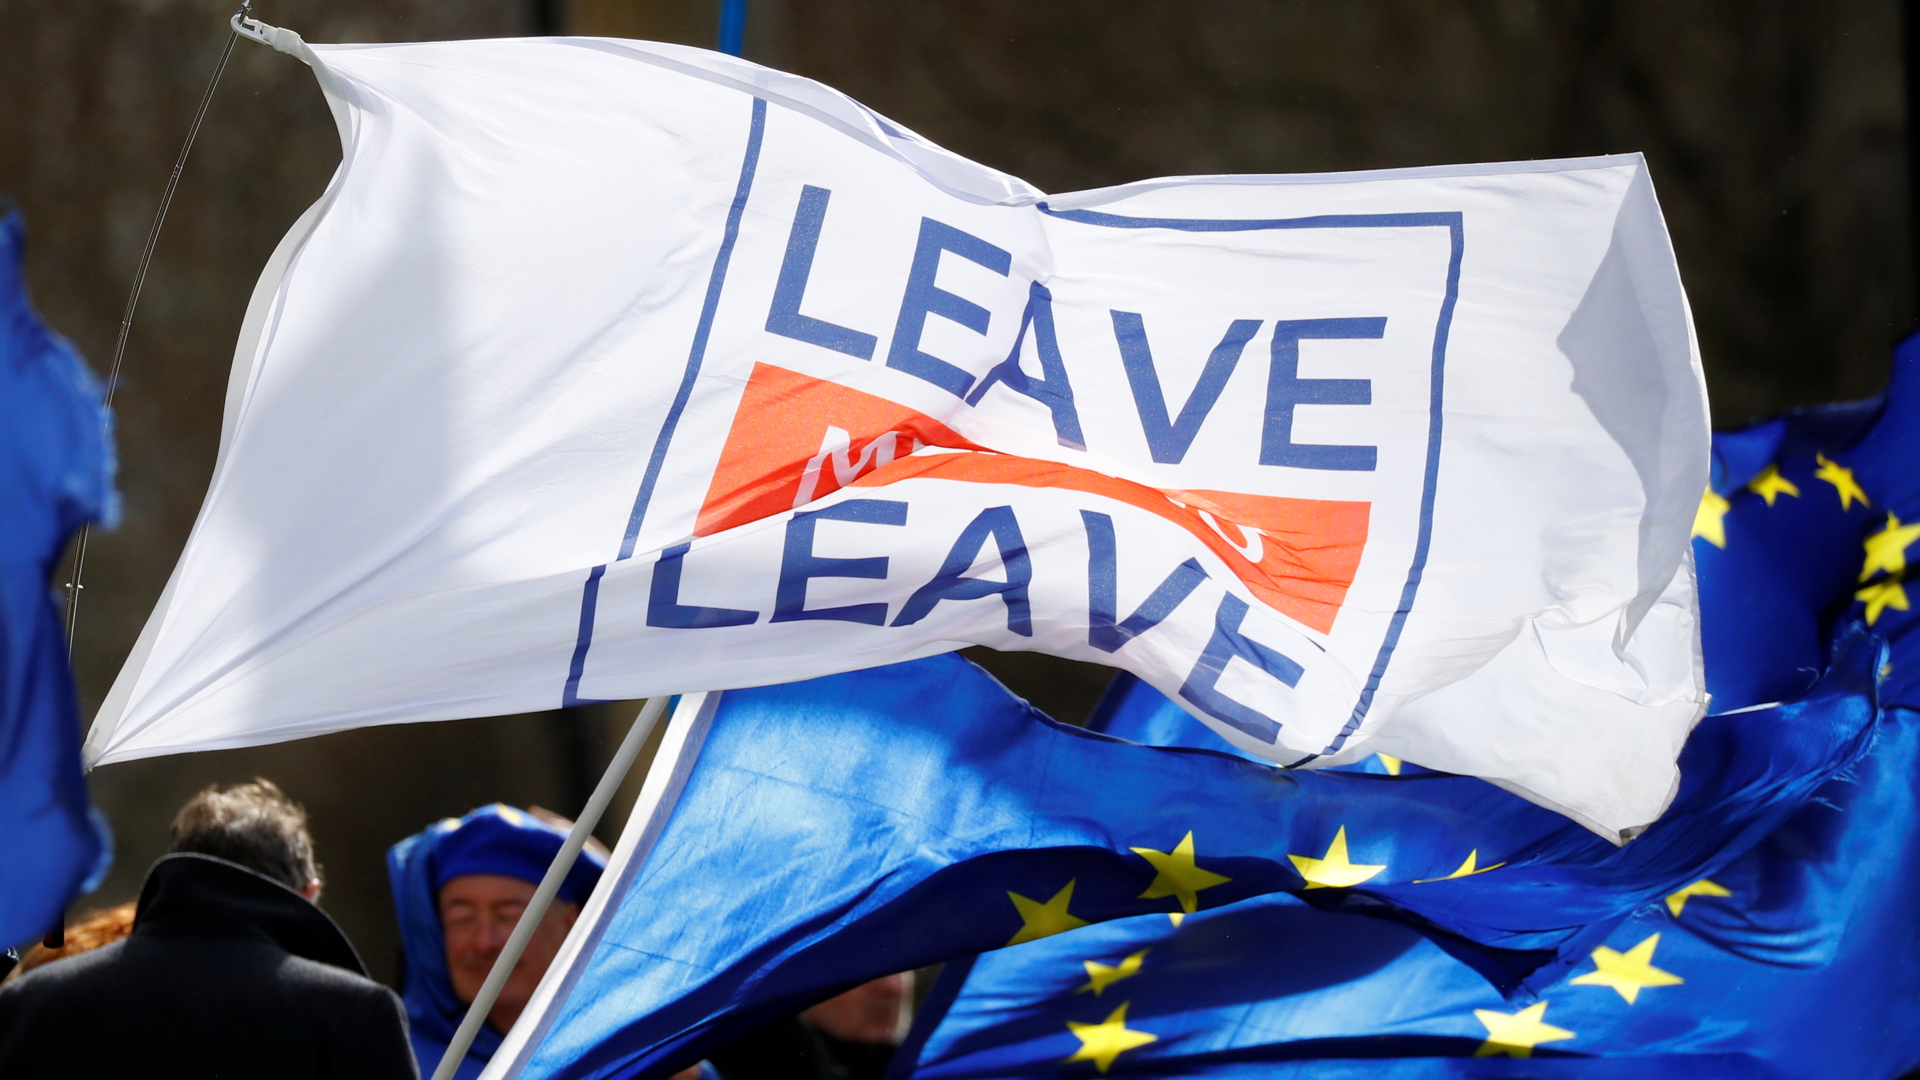 Brexit: EU-Flagge und Banner mit der Aufschrift "Leave Leave"